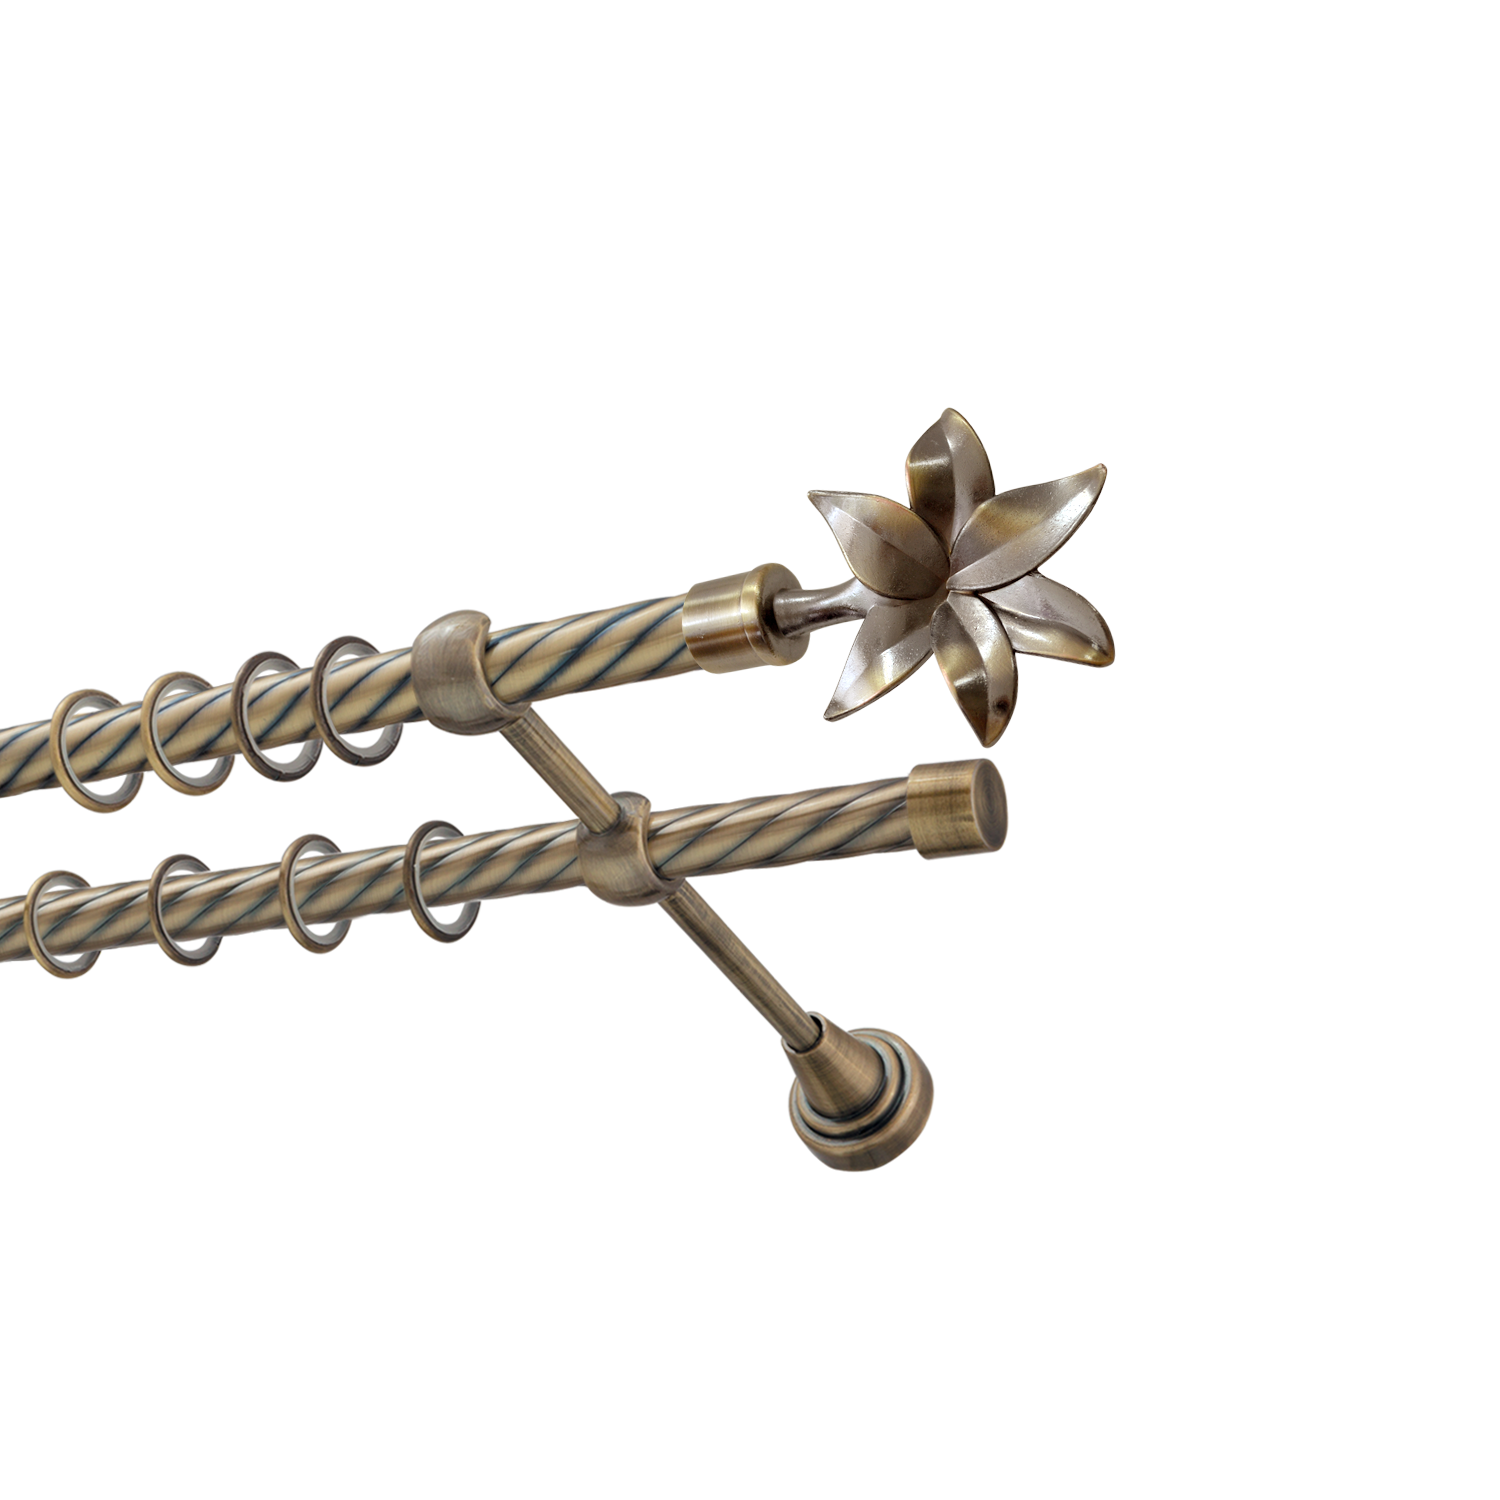 Металлический карниз для штор Магнолия, двухрядный 16/16 мм, бронза, витая штанга, длина 180 см - фото Wikidecor.ru